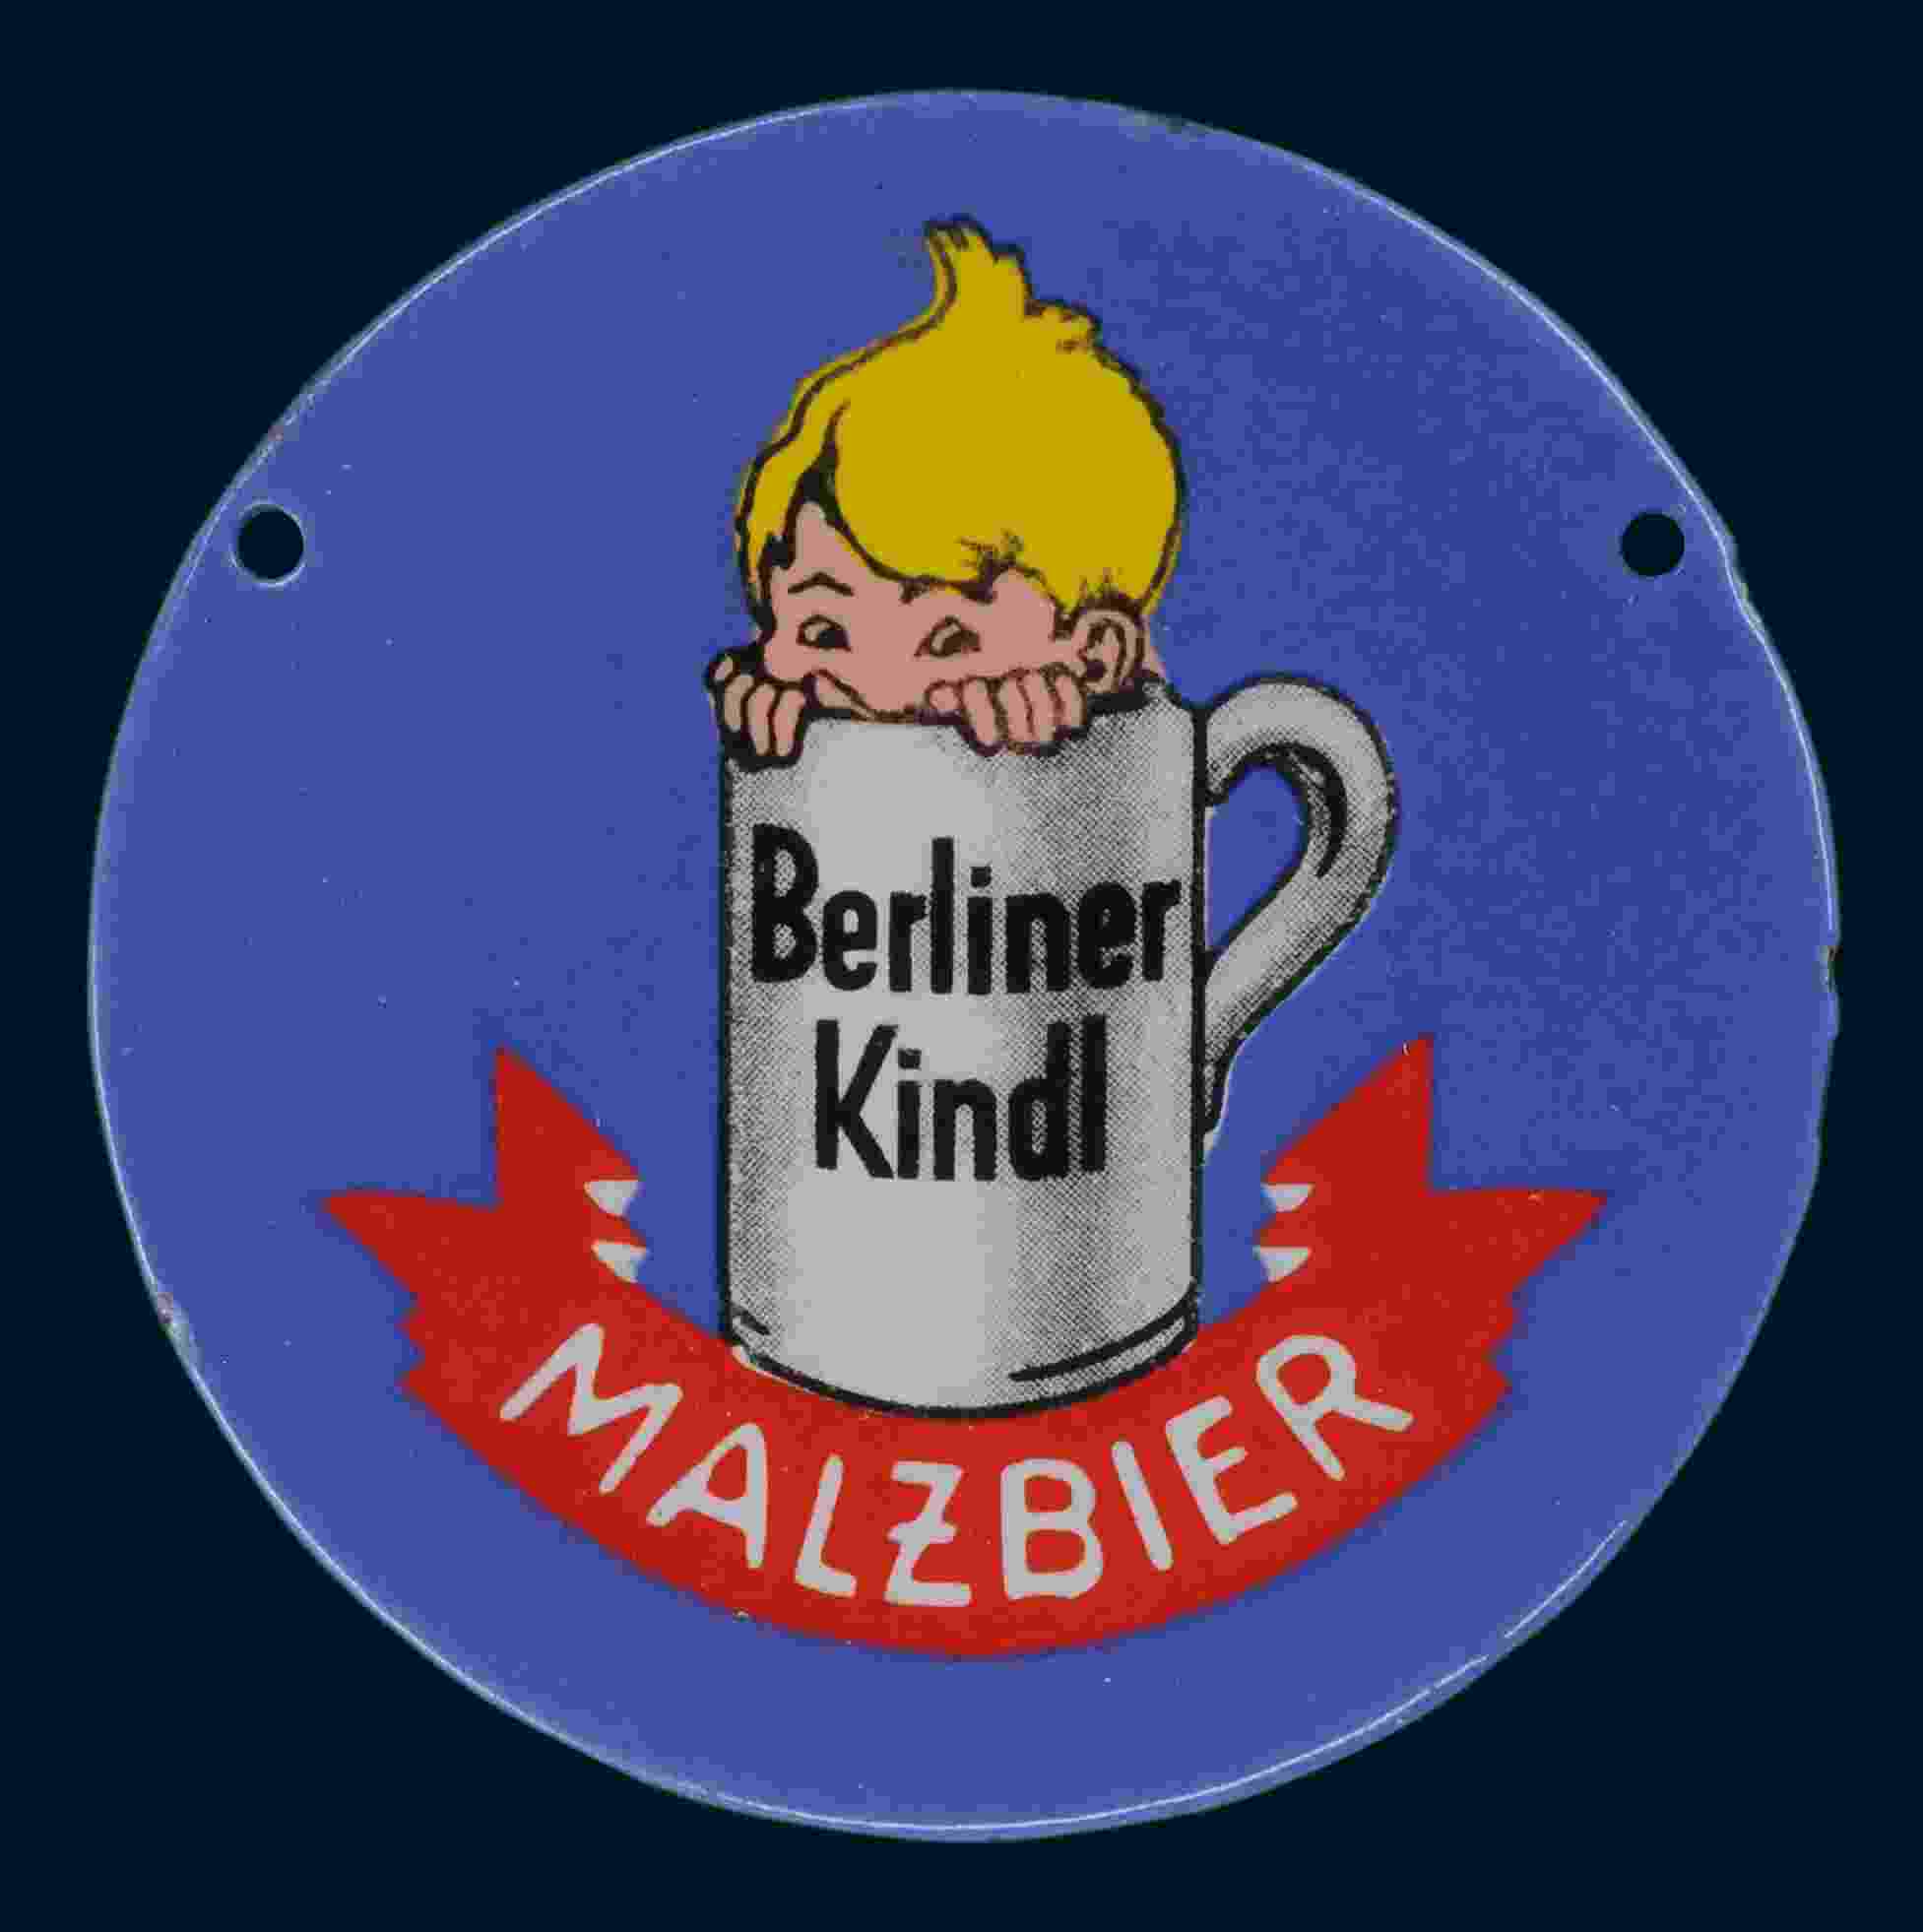 Berliner Kindl Malzbier Zapfhahnschild 